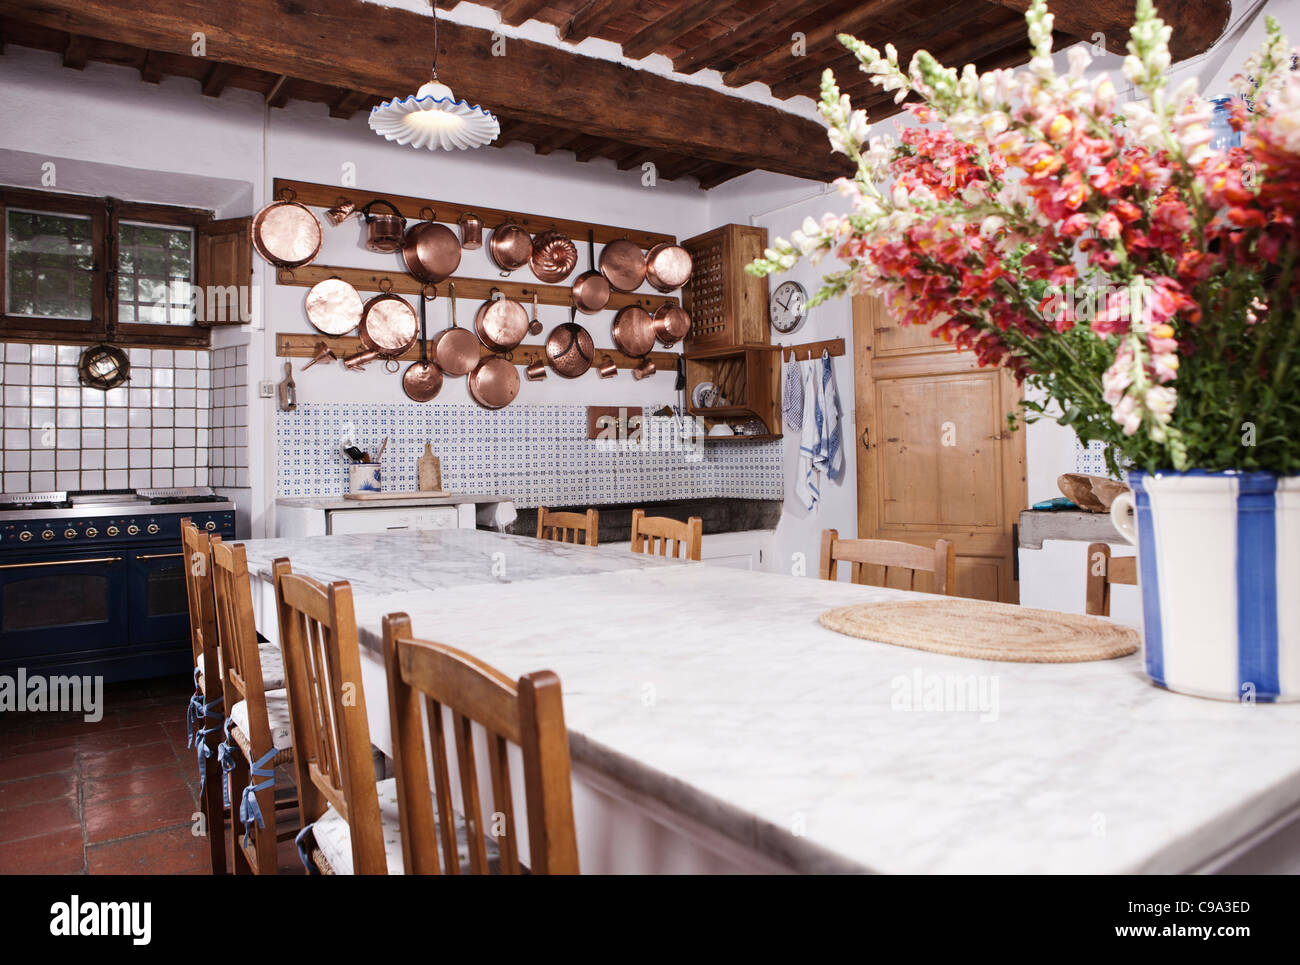 Italien, Toskana, Magliano, Blick auf Küche mit Blumen am Esstisch Stockfoto